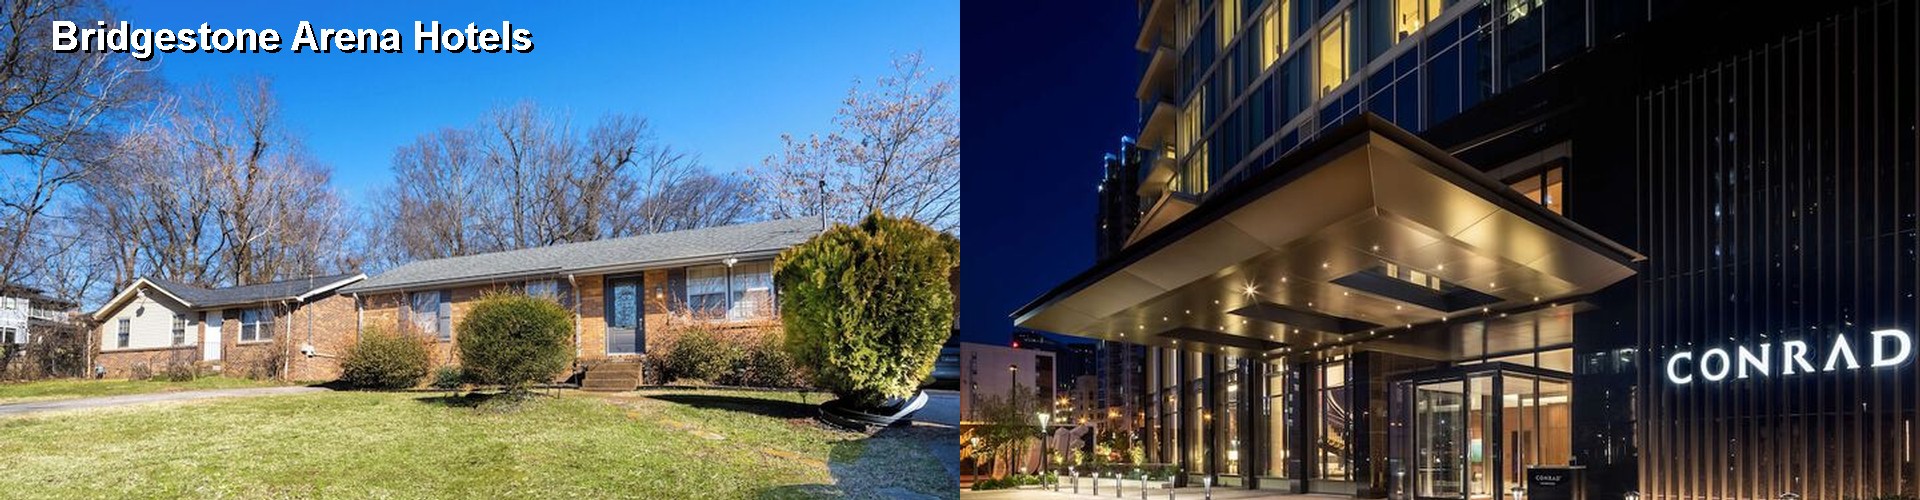 5 Best Hotels near Bridgestone Arena